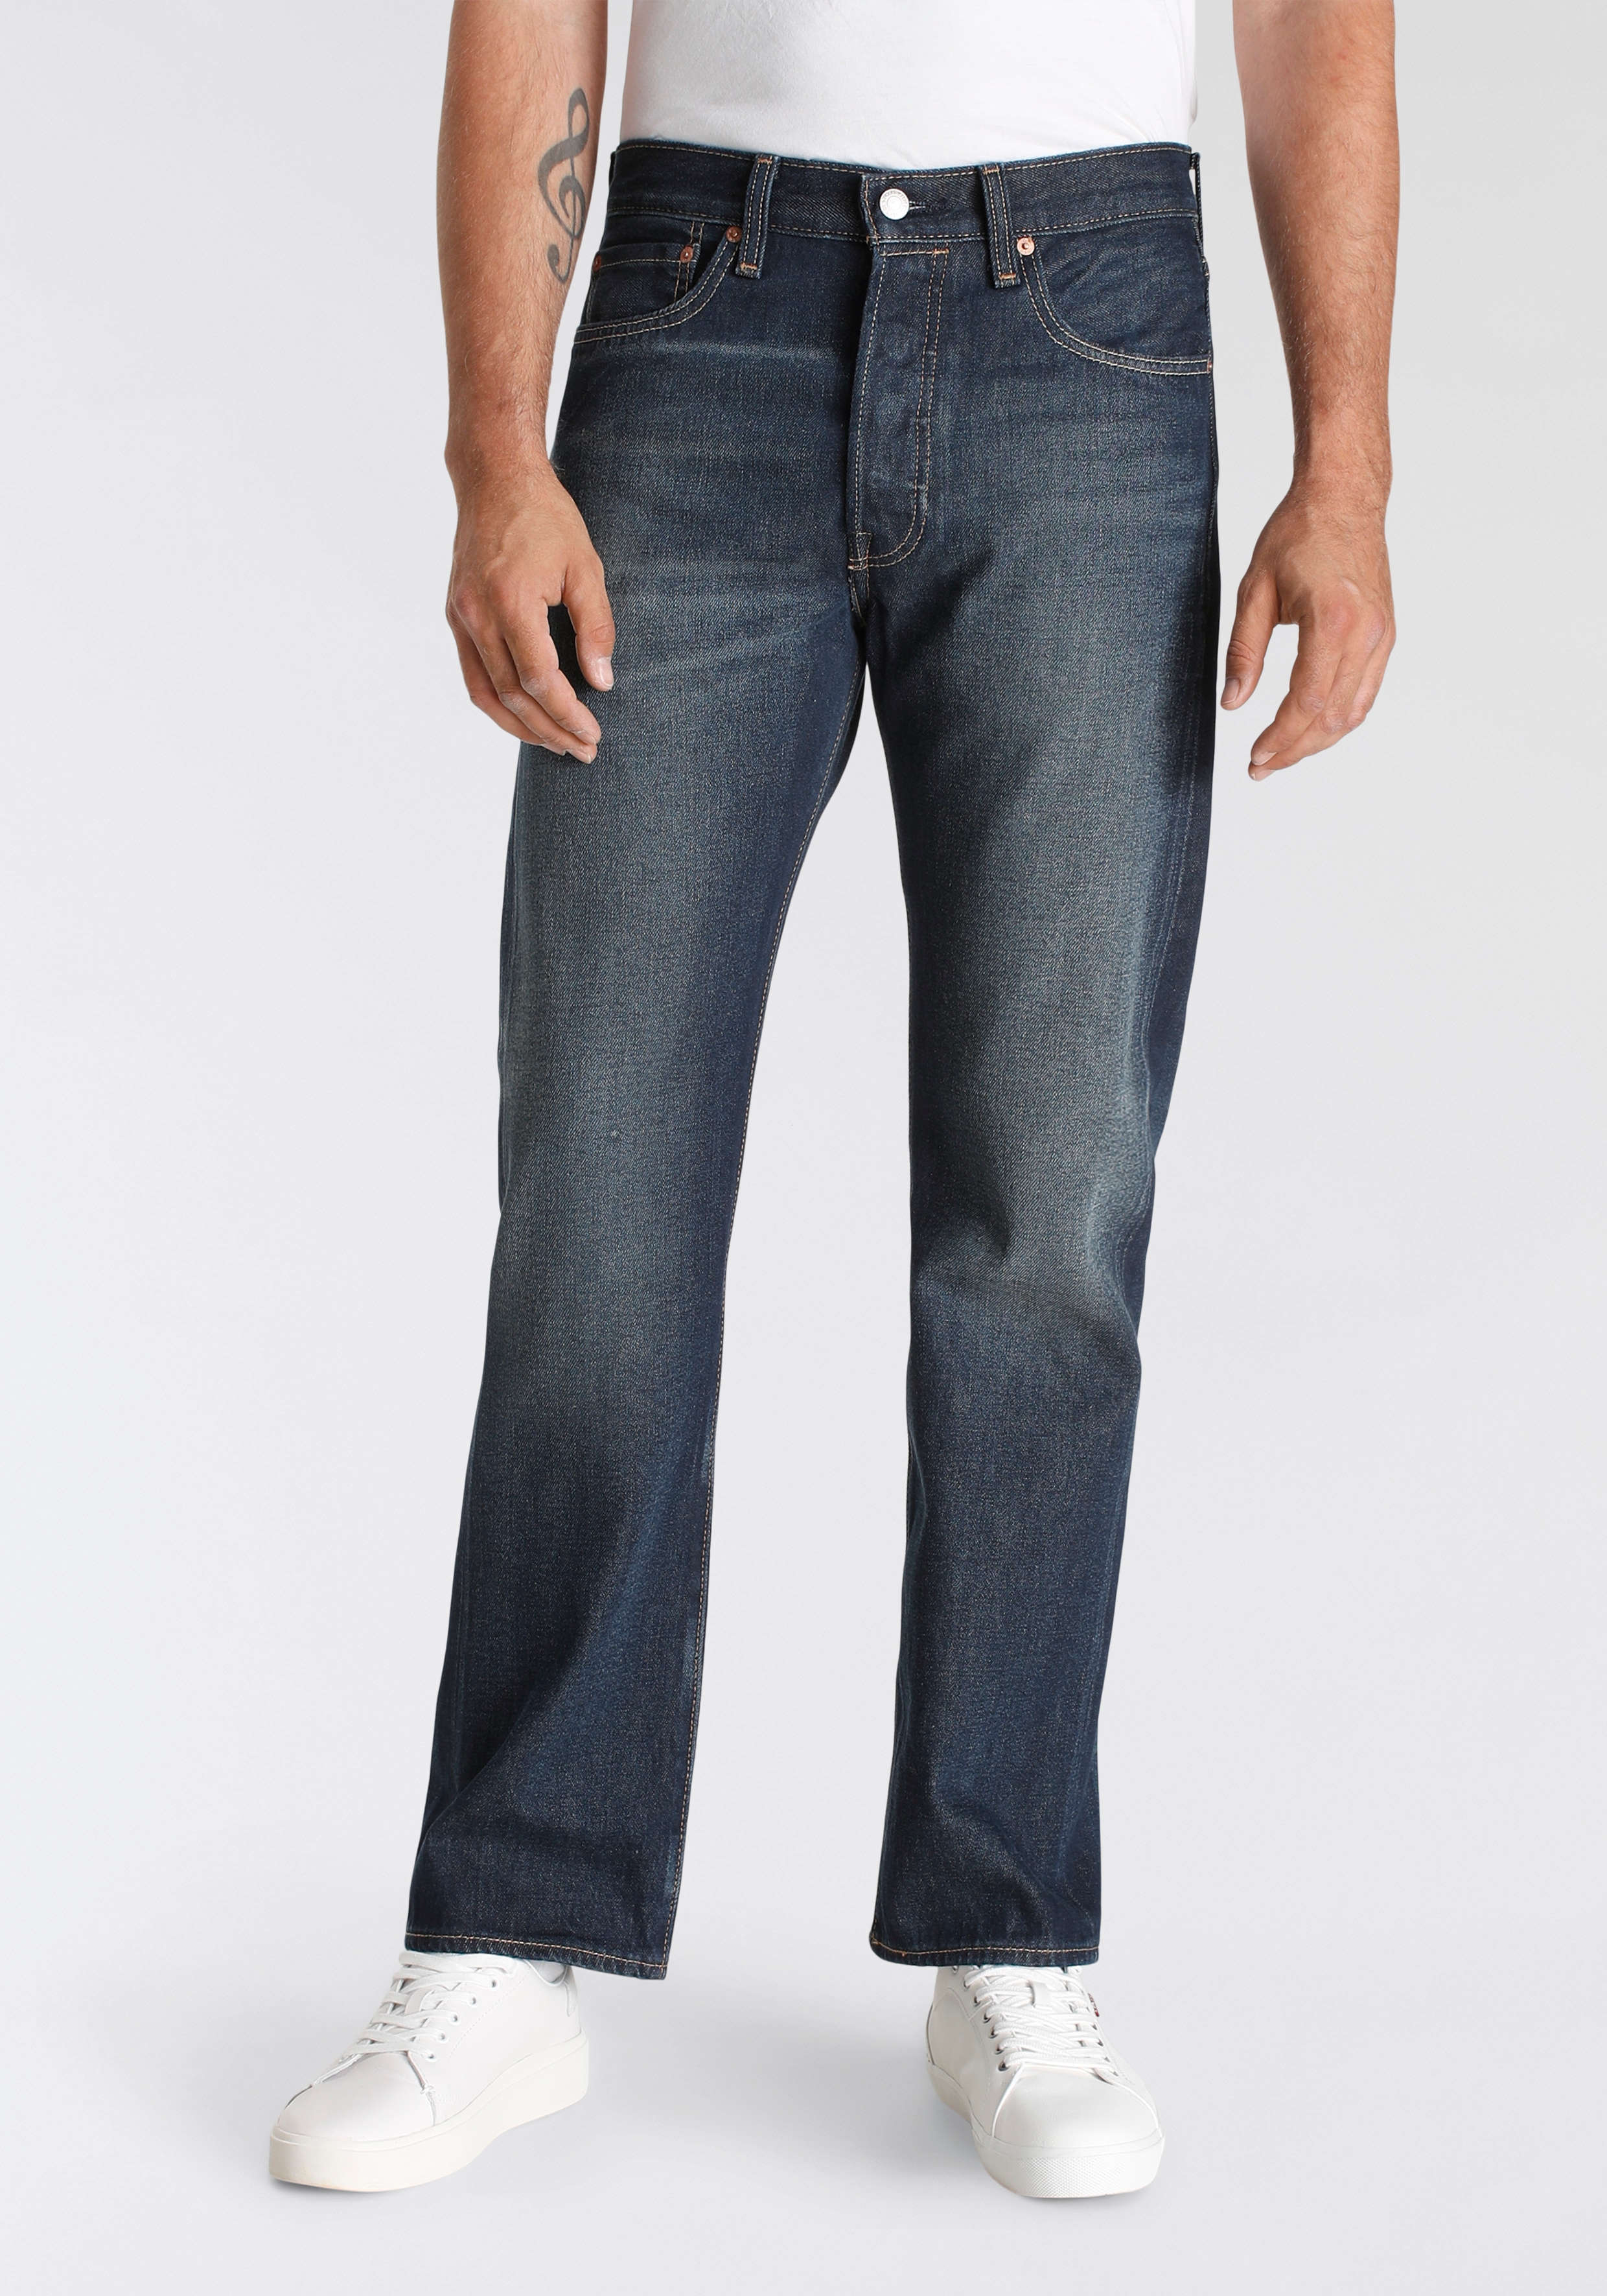 Levis Straight-Jeans "501 LEVIS ORIGINAL"